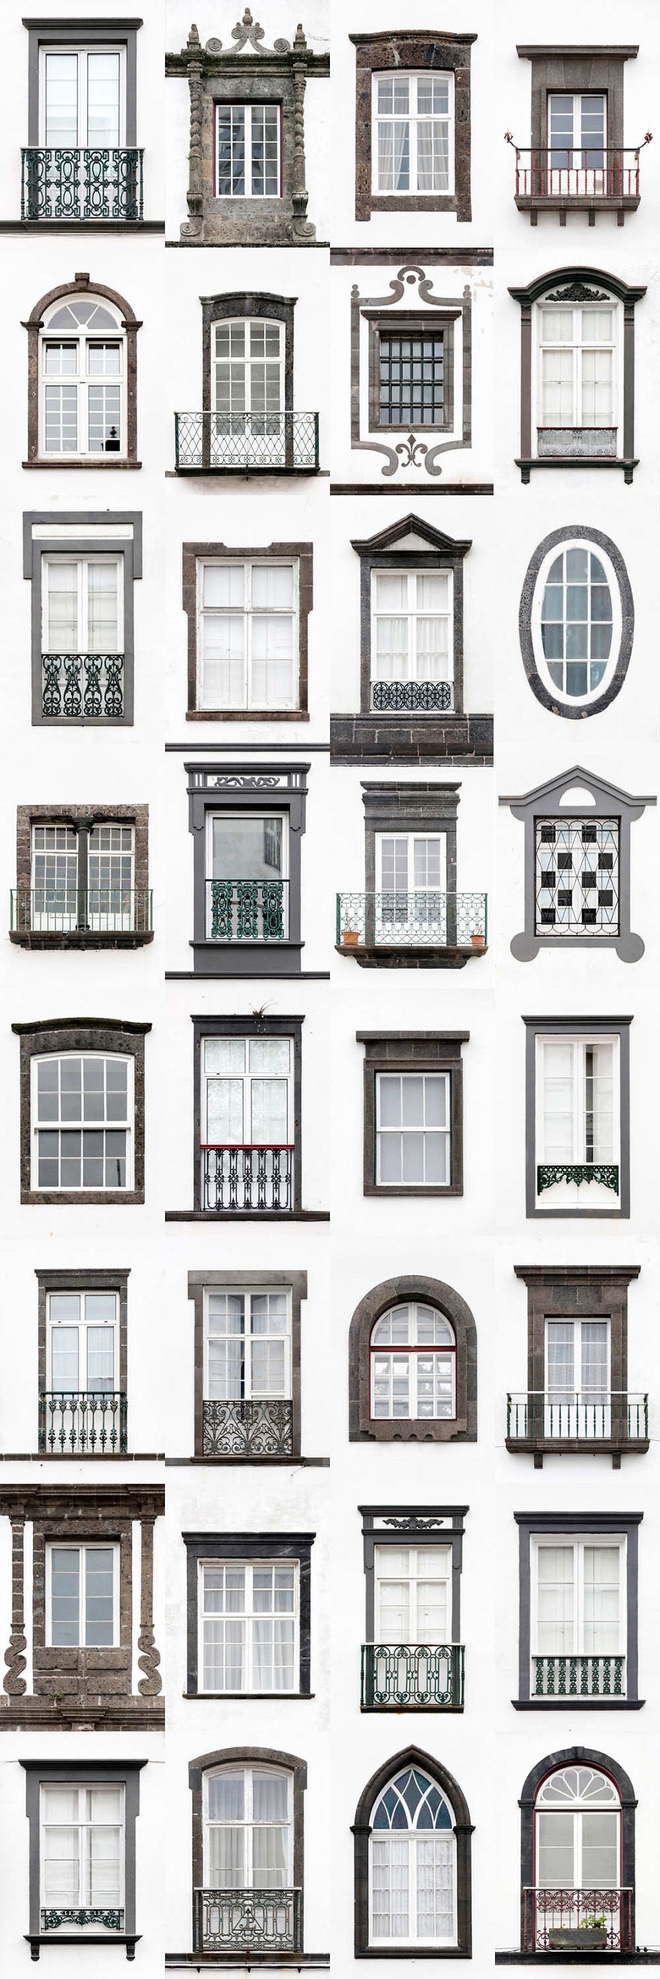 Mãn nhãn với 14 phong cách thiết kế cửa sổ khác nhau ở Bồ Đào Nha - Ảnh 9.